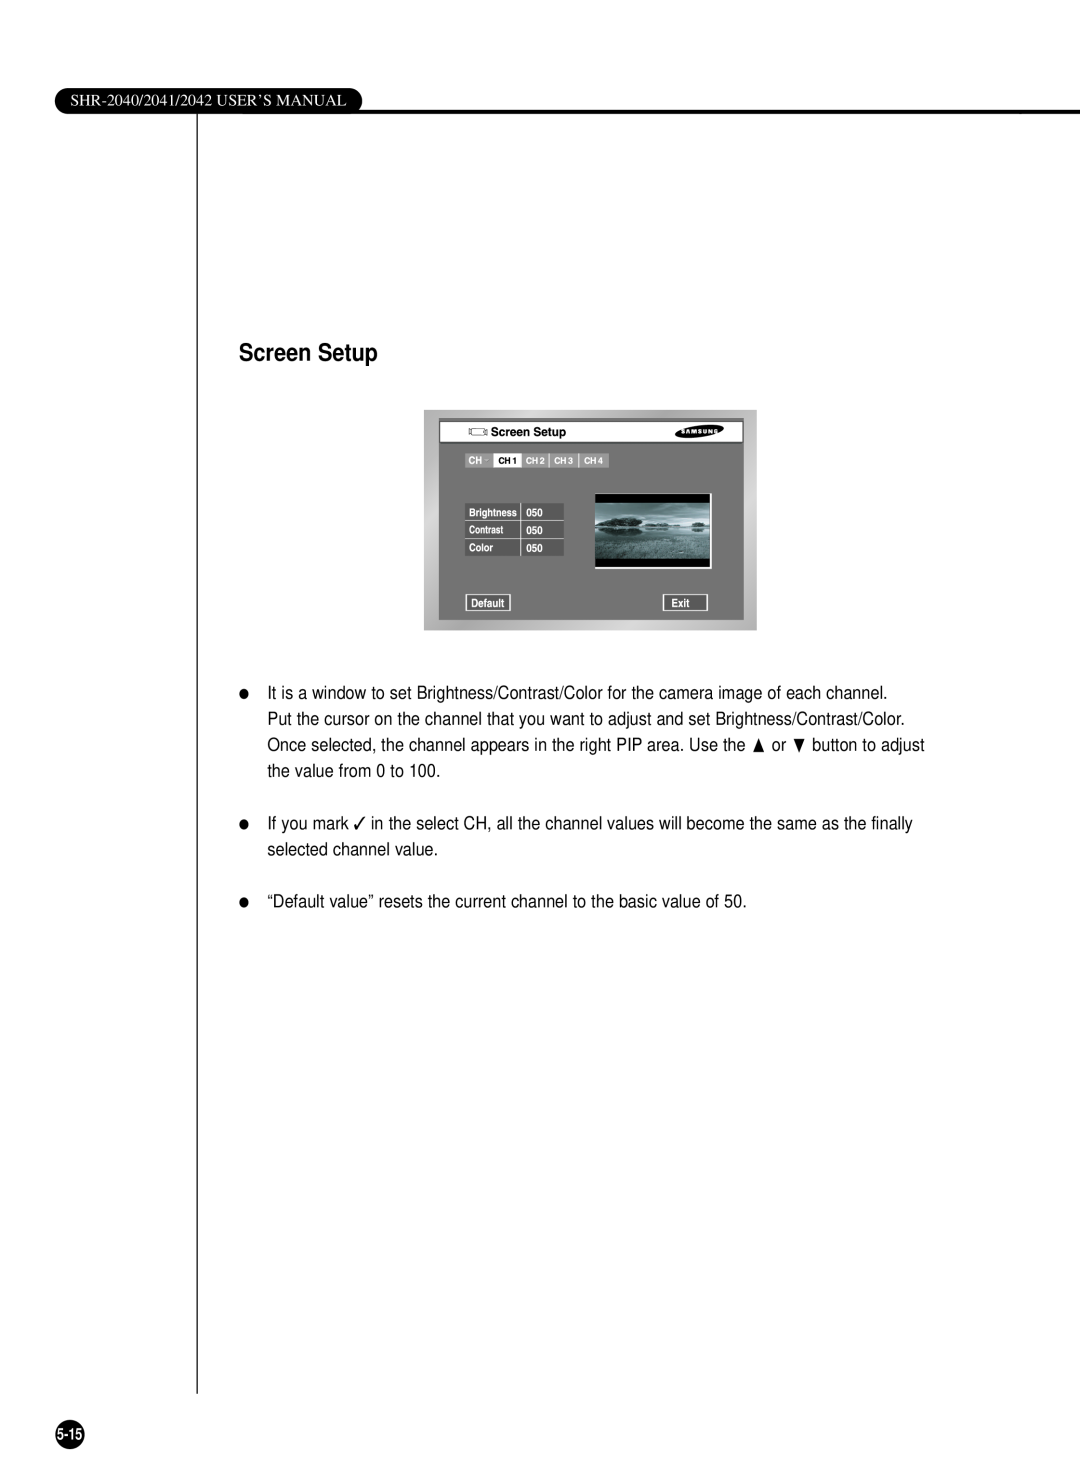 Samsung SHR-2042P, SHR-2040P/GAR, SHR-2040PX, SHR-2040P/XEC manual Screen Setup 